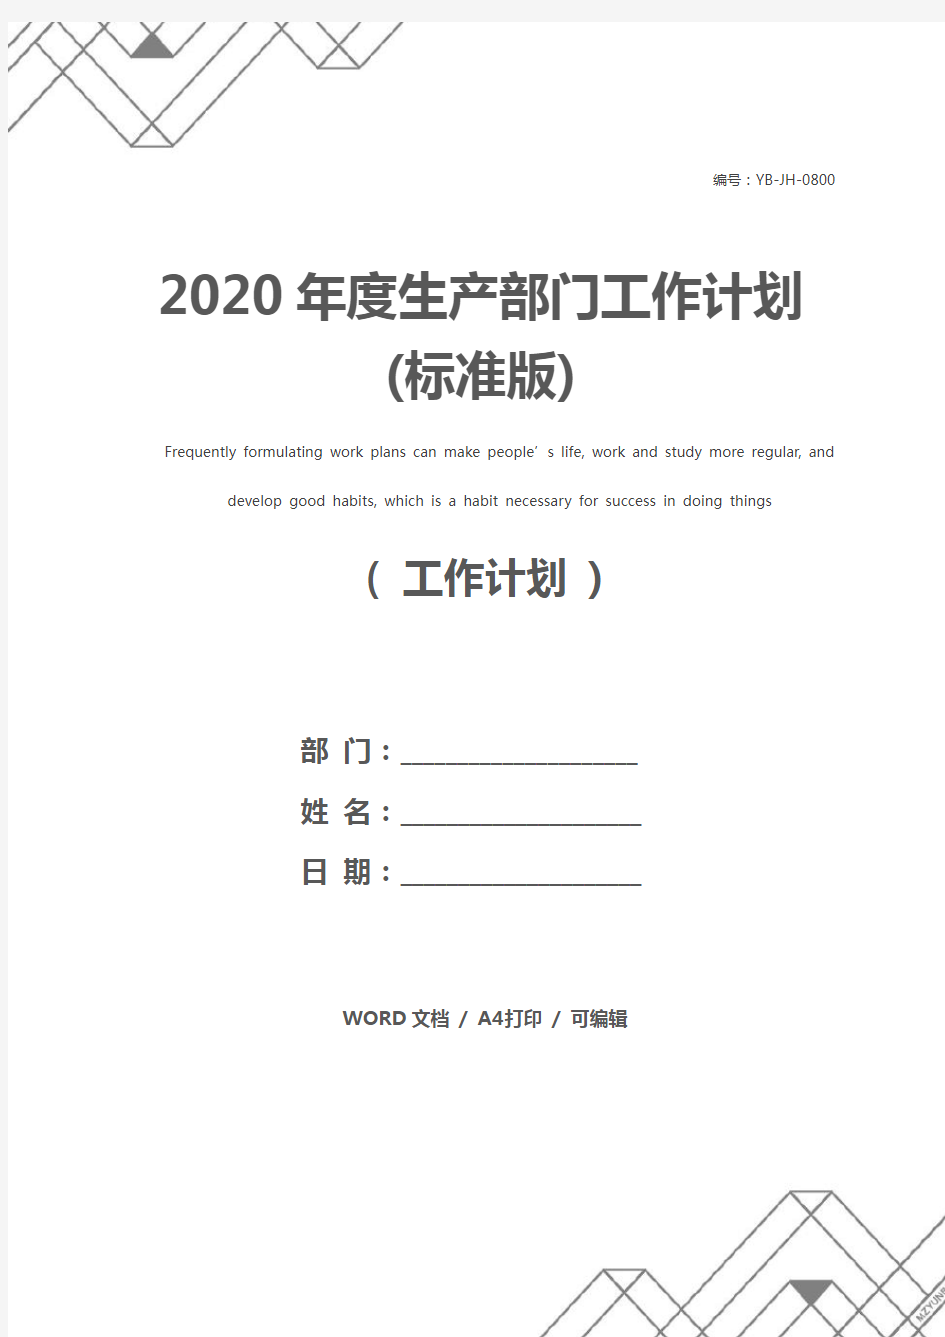 2020年度生产部门工作计划(标准版)